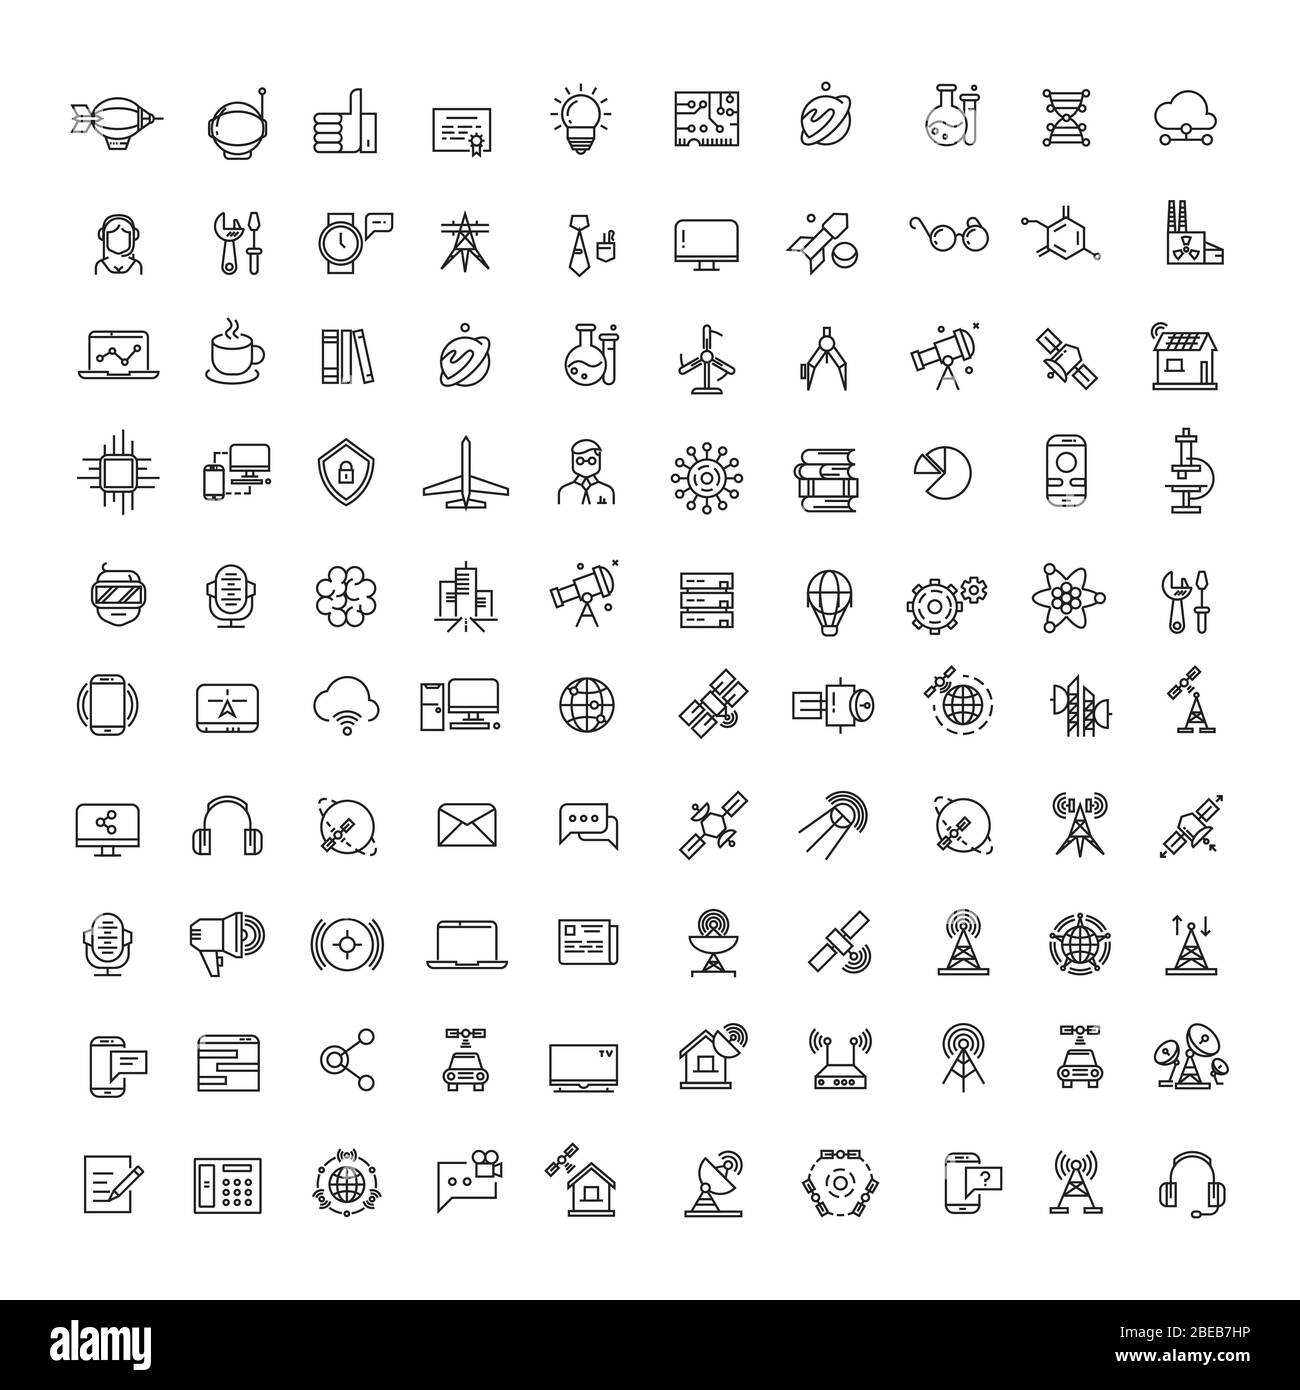 Büro, Wissenschaft, Technologien, Raum und Kommunikation Line Icons Set. Sammlung von Technologie und Wissenschaft Kommunikation Symbole Illustration Stock Vektor